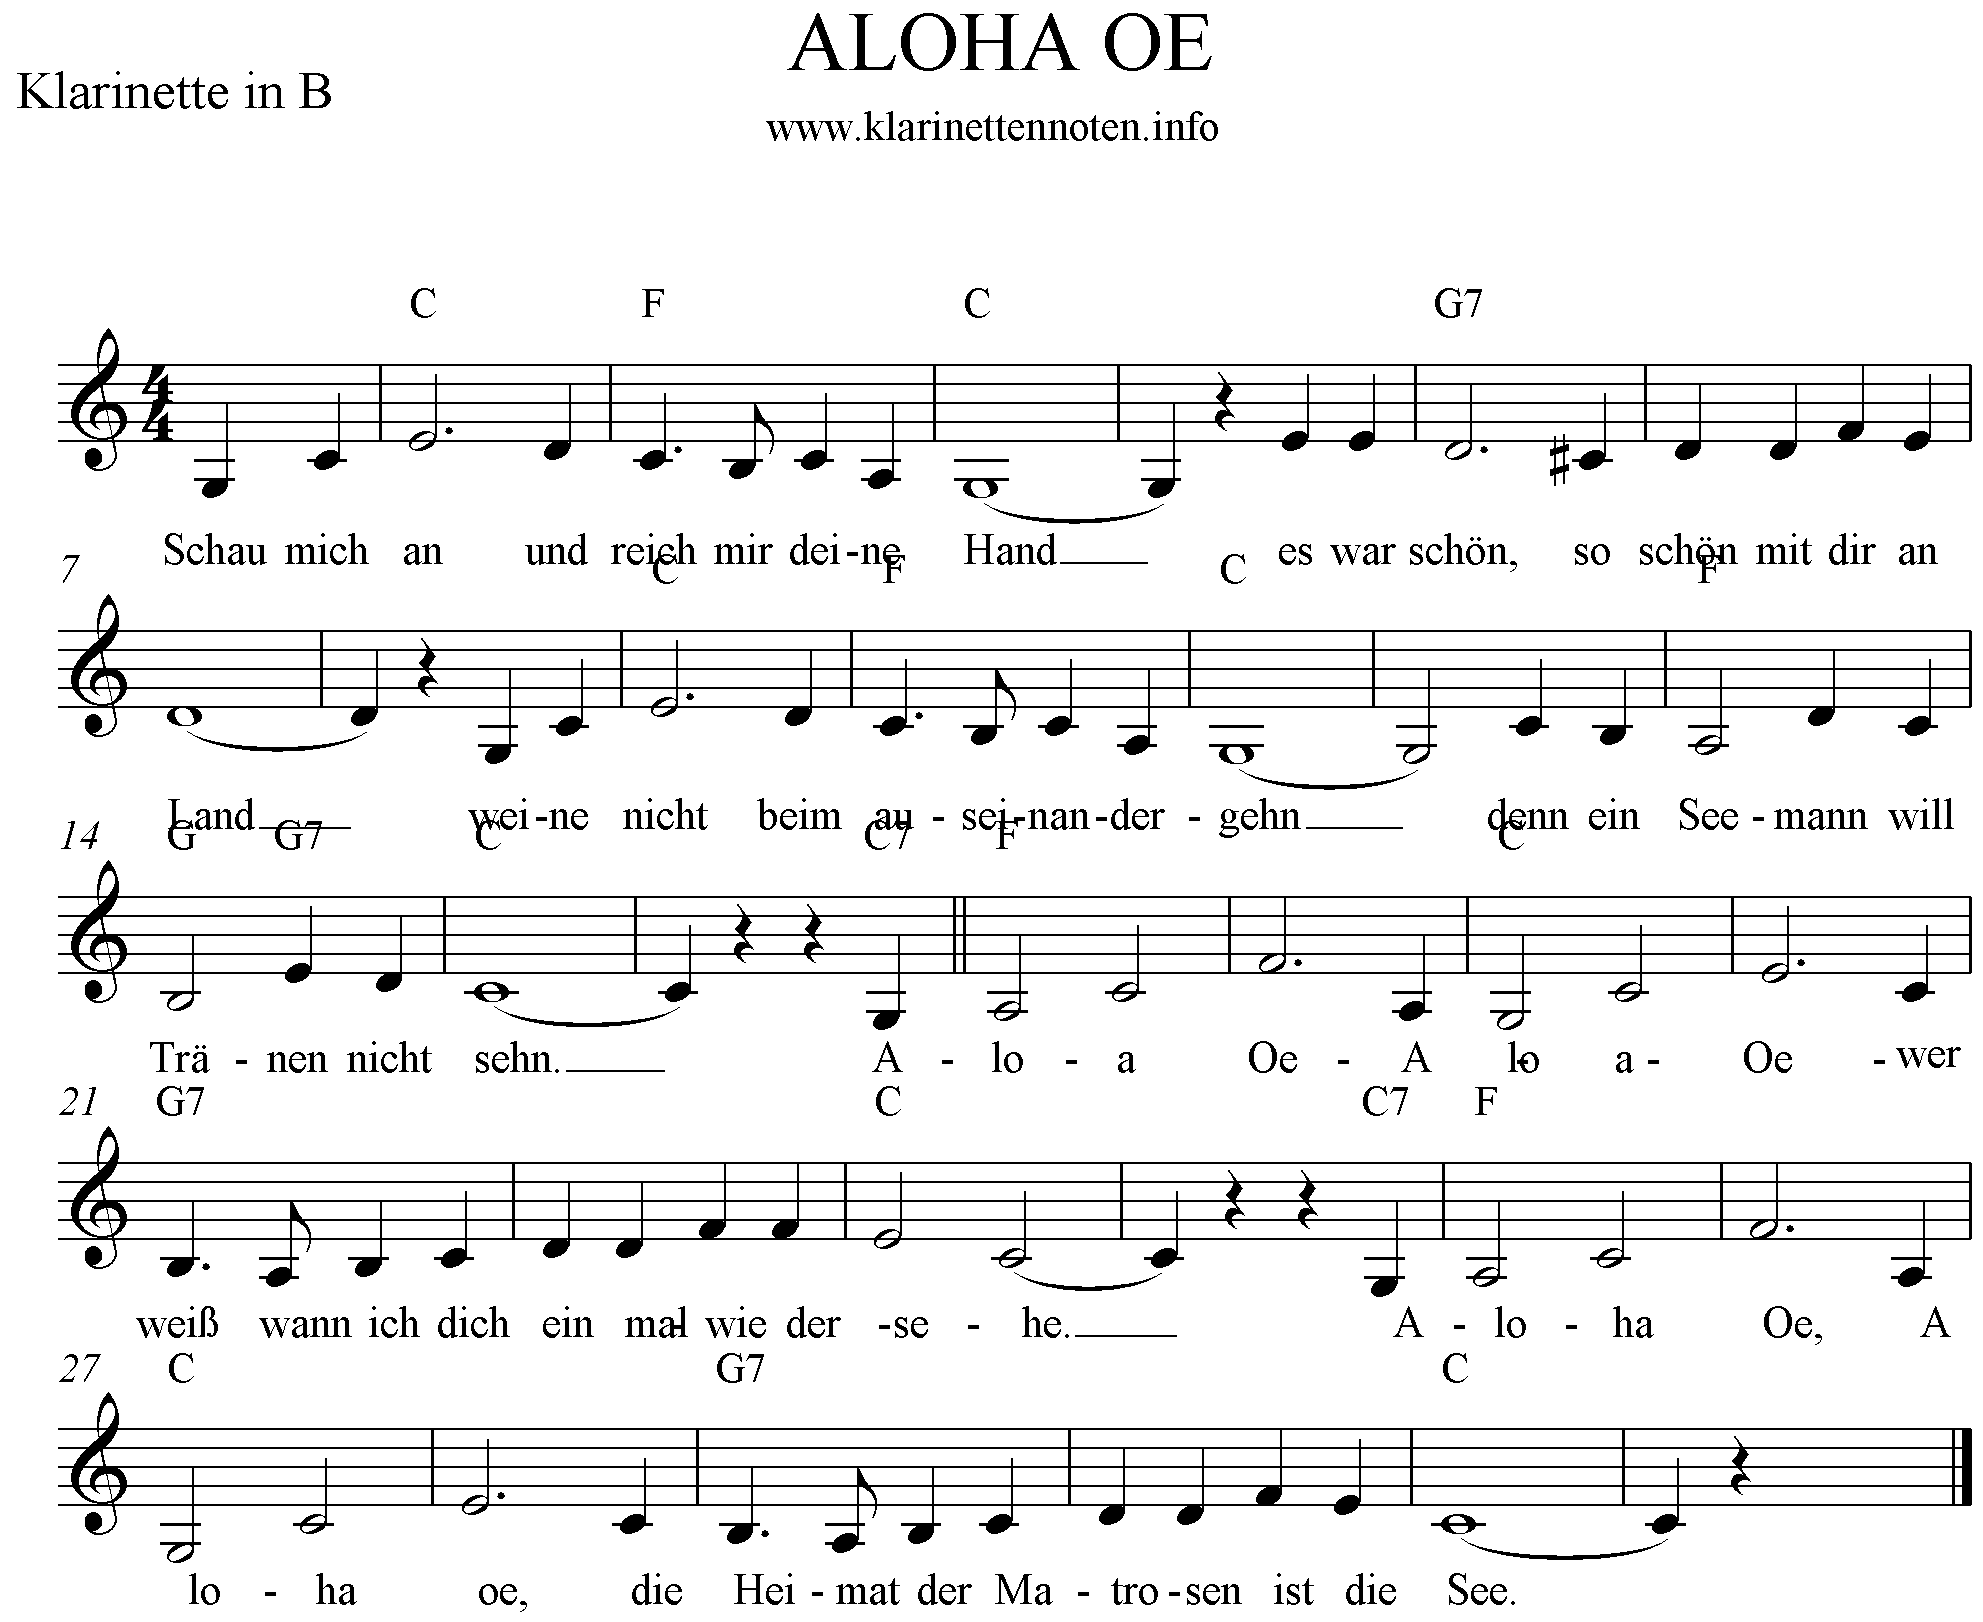 Heja text aloha noten he und Songtext aloha